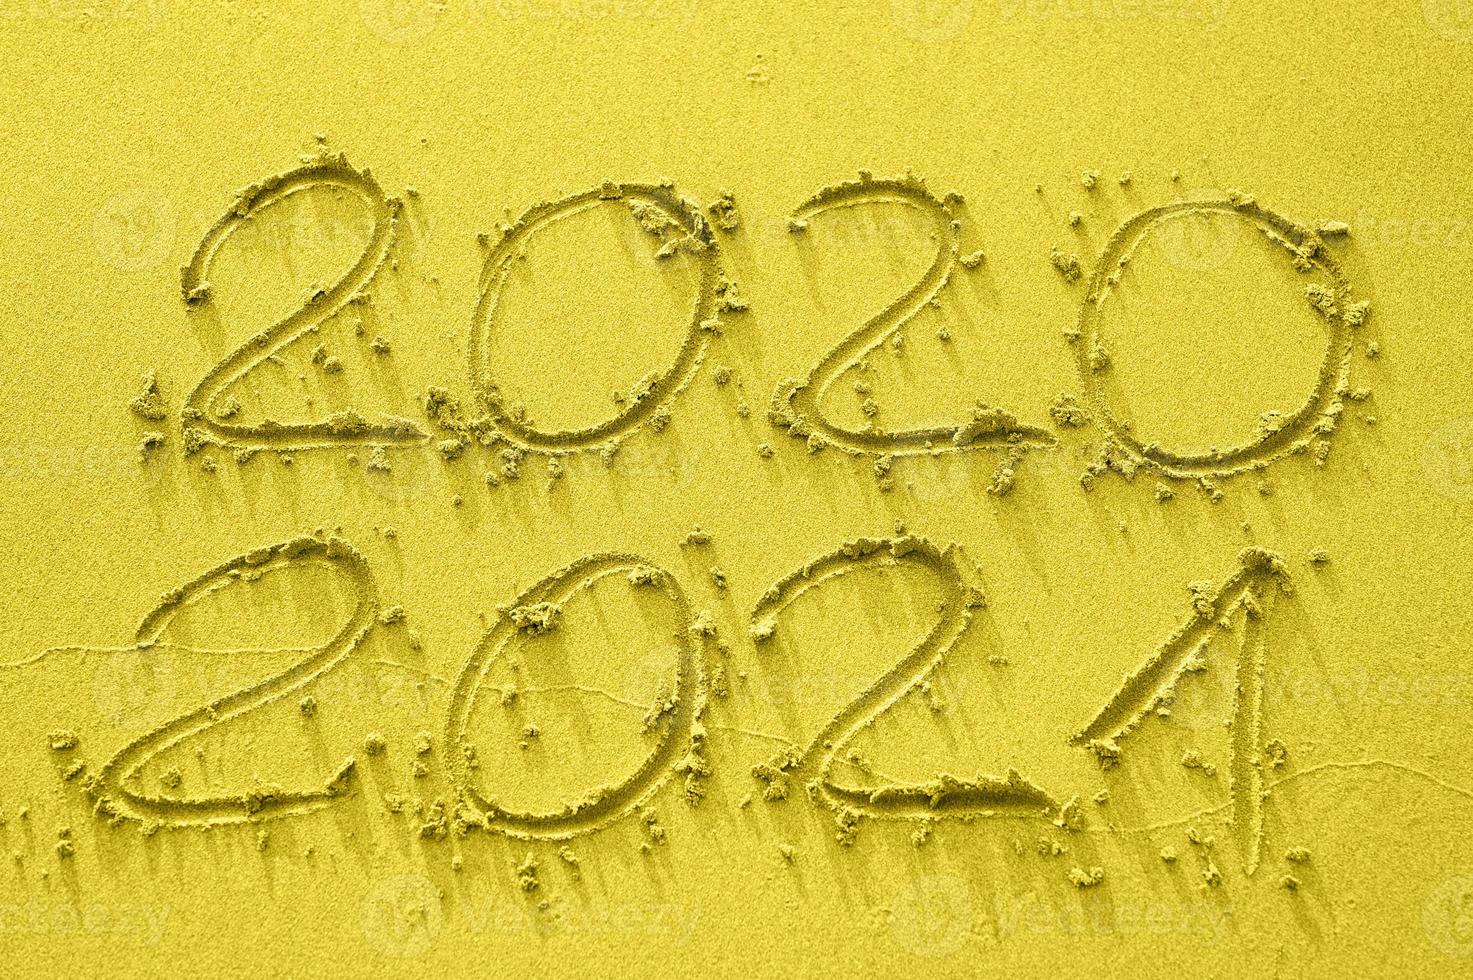 inskrift på guldsanden 2020 och 2021, tonad i trendfärgen år 2021 foto